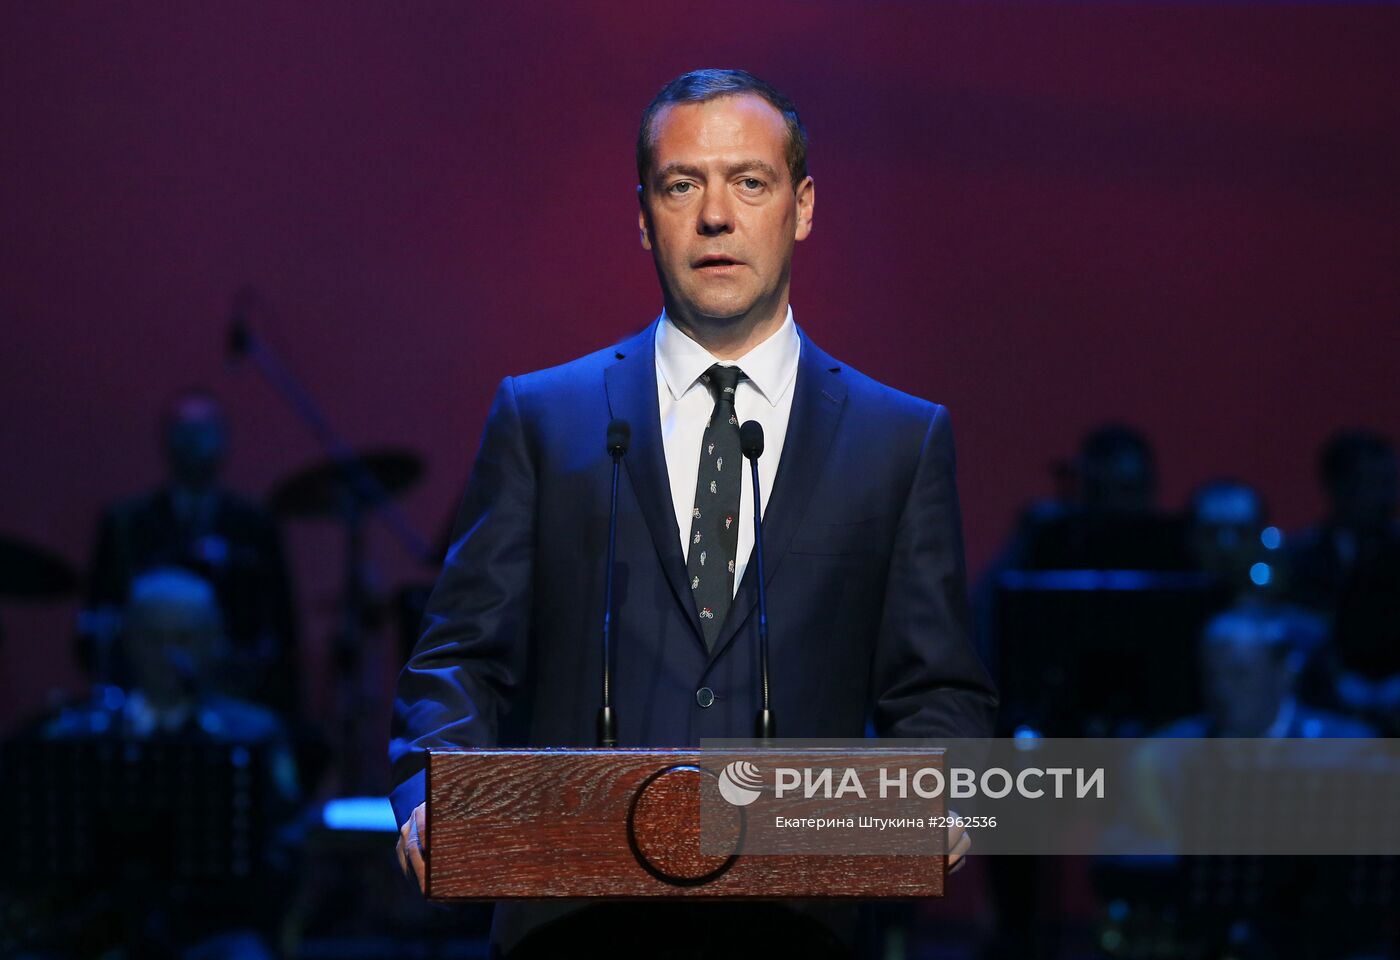 Премьер-министр РФ Д. Медведев принял участие в мероприятии в честь 25-летия ФТС